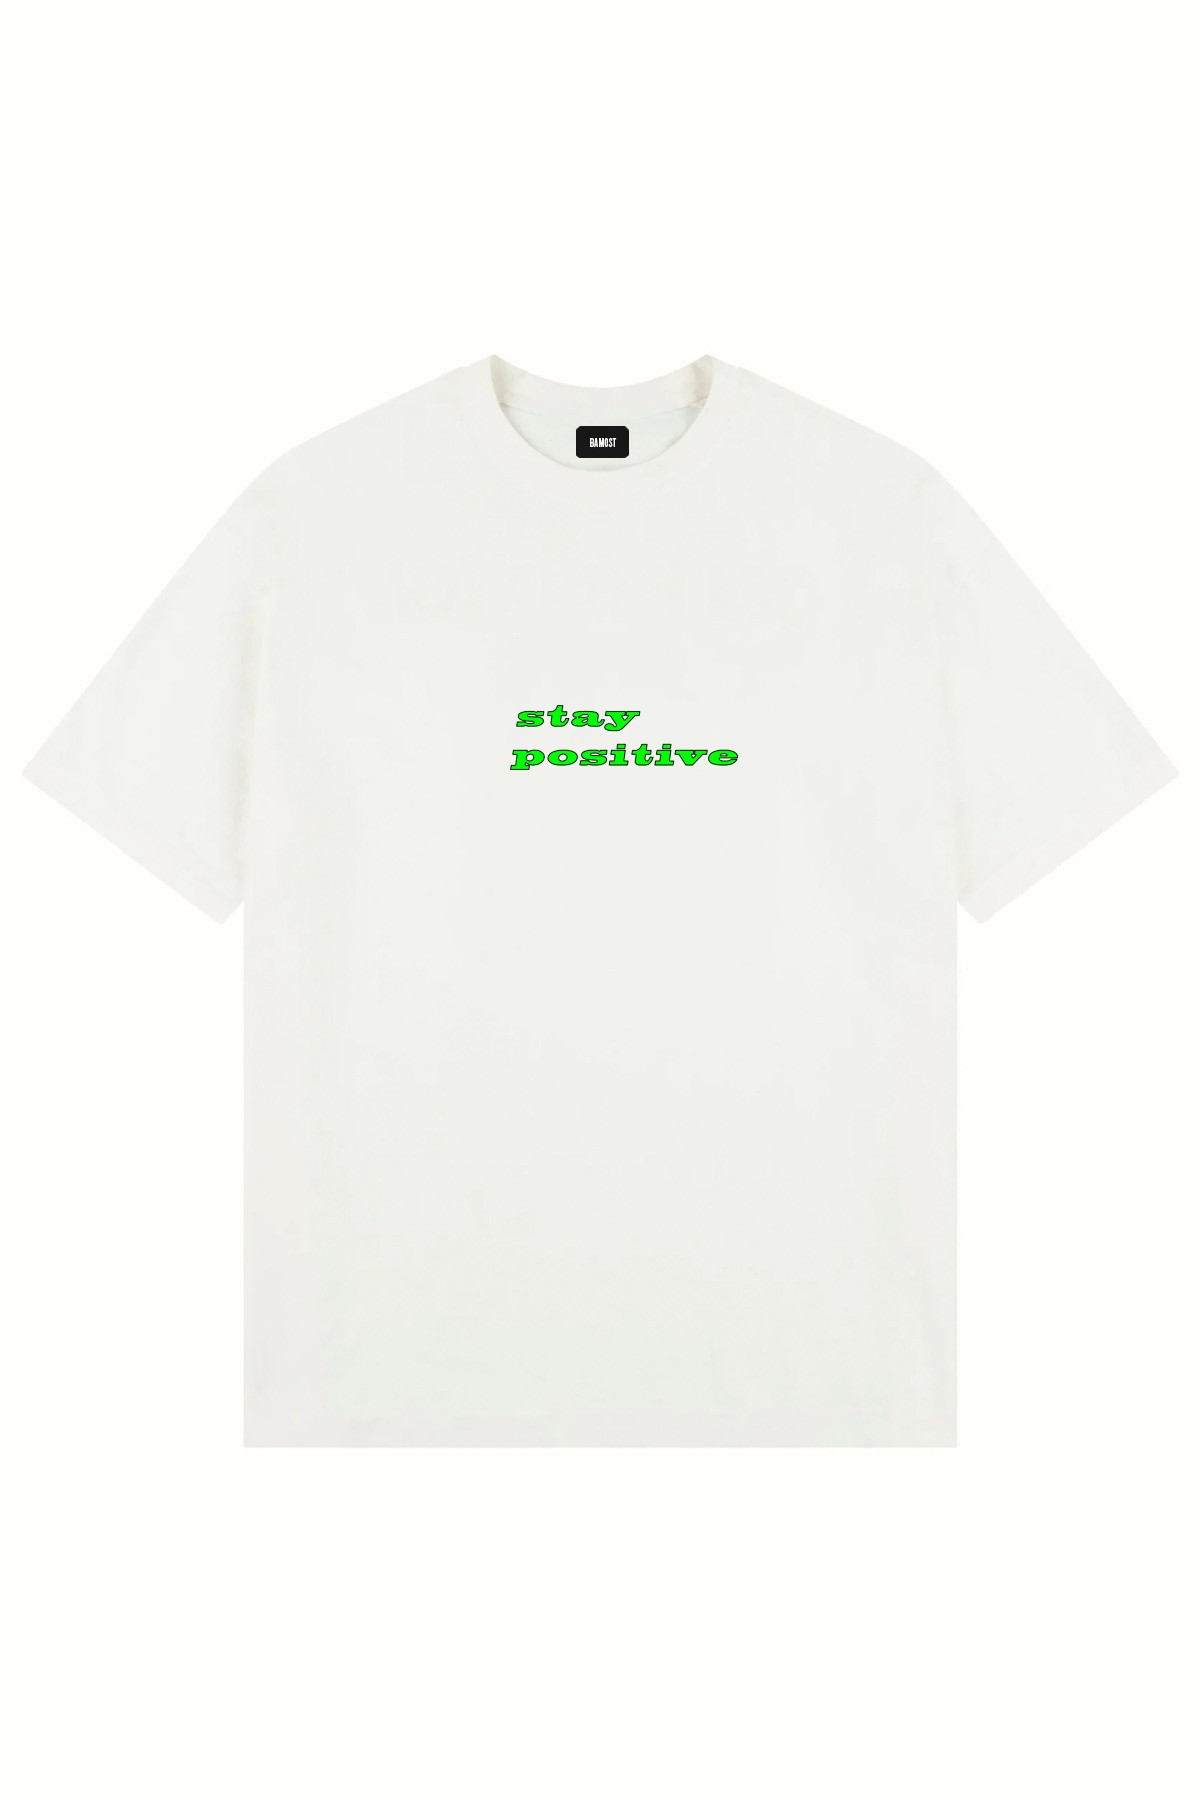 2025 - Oversize Baskılı T-Shirt